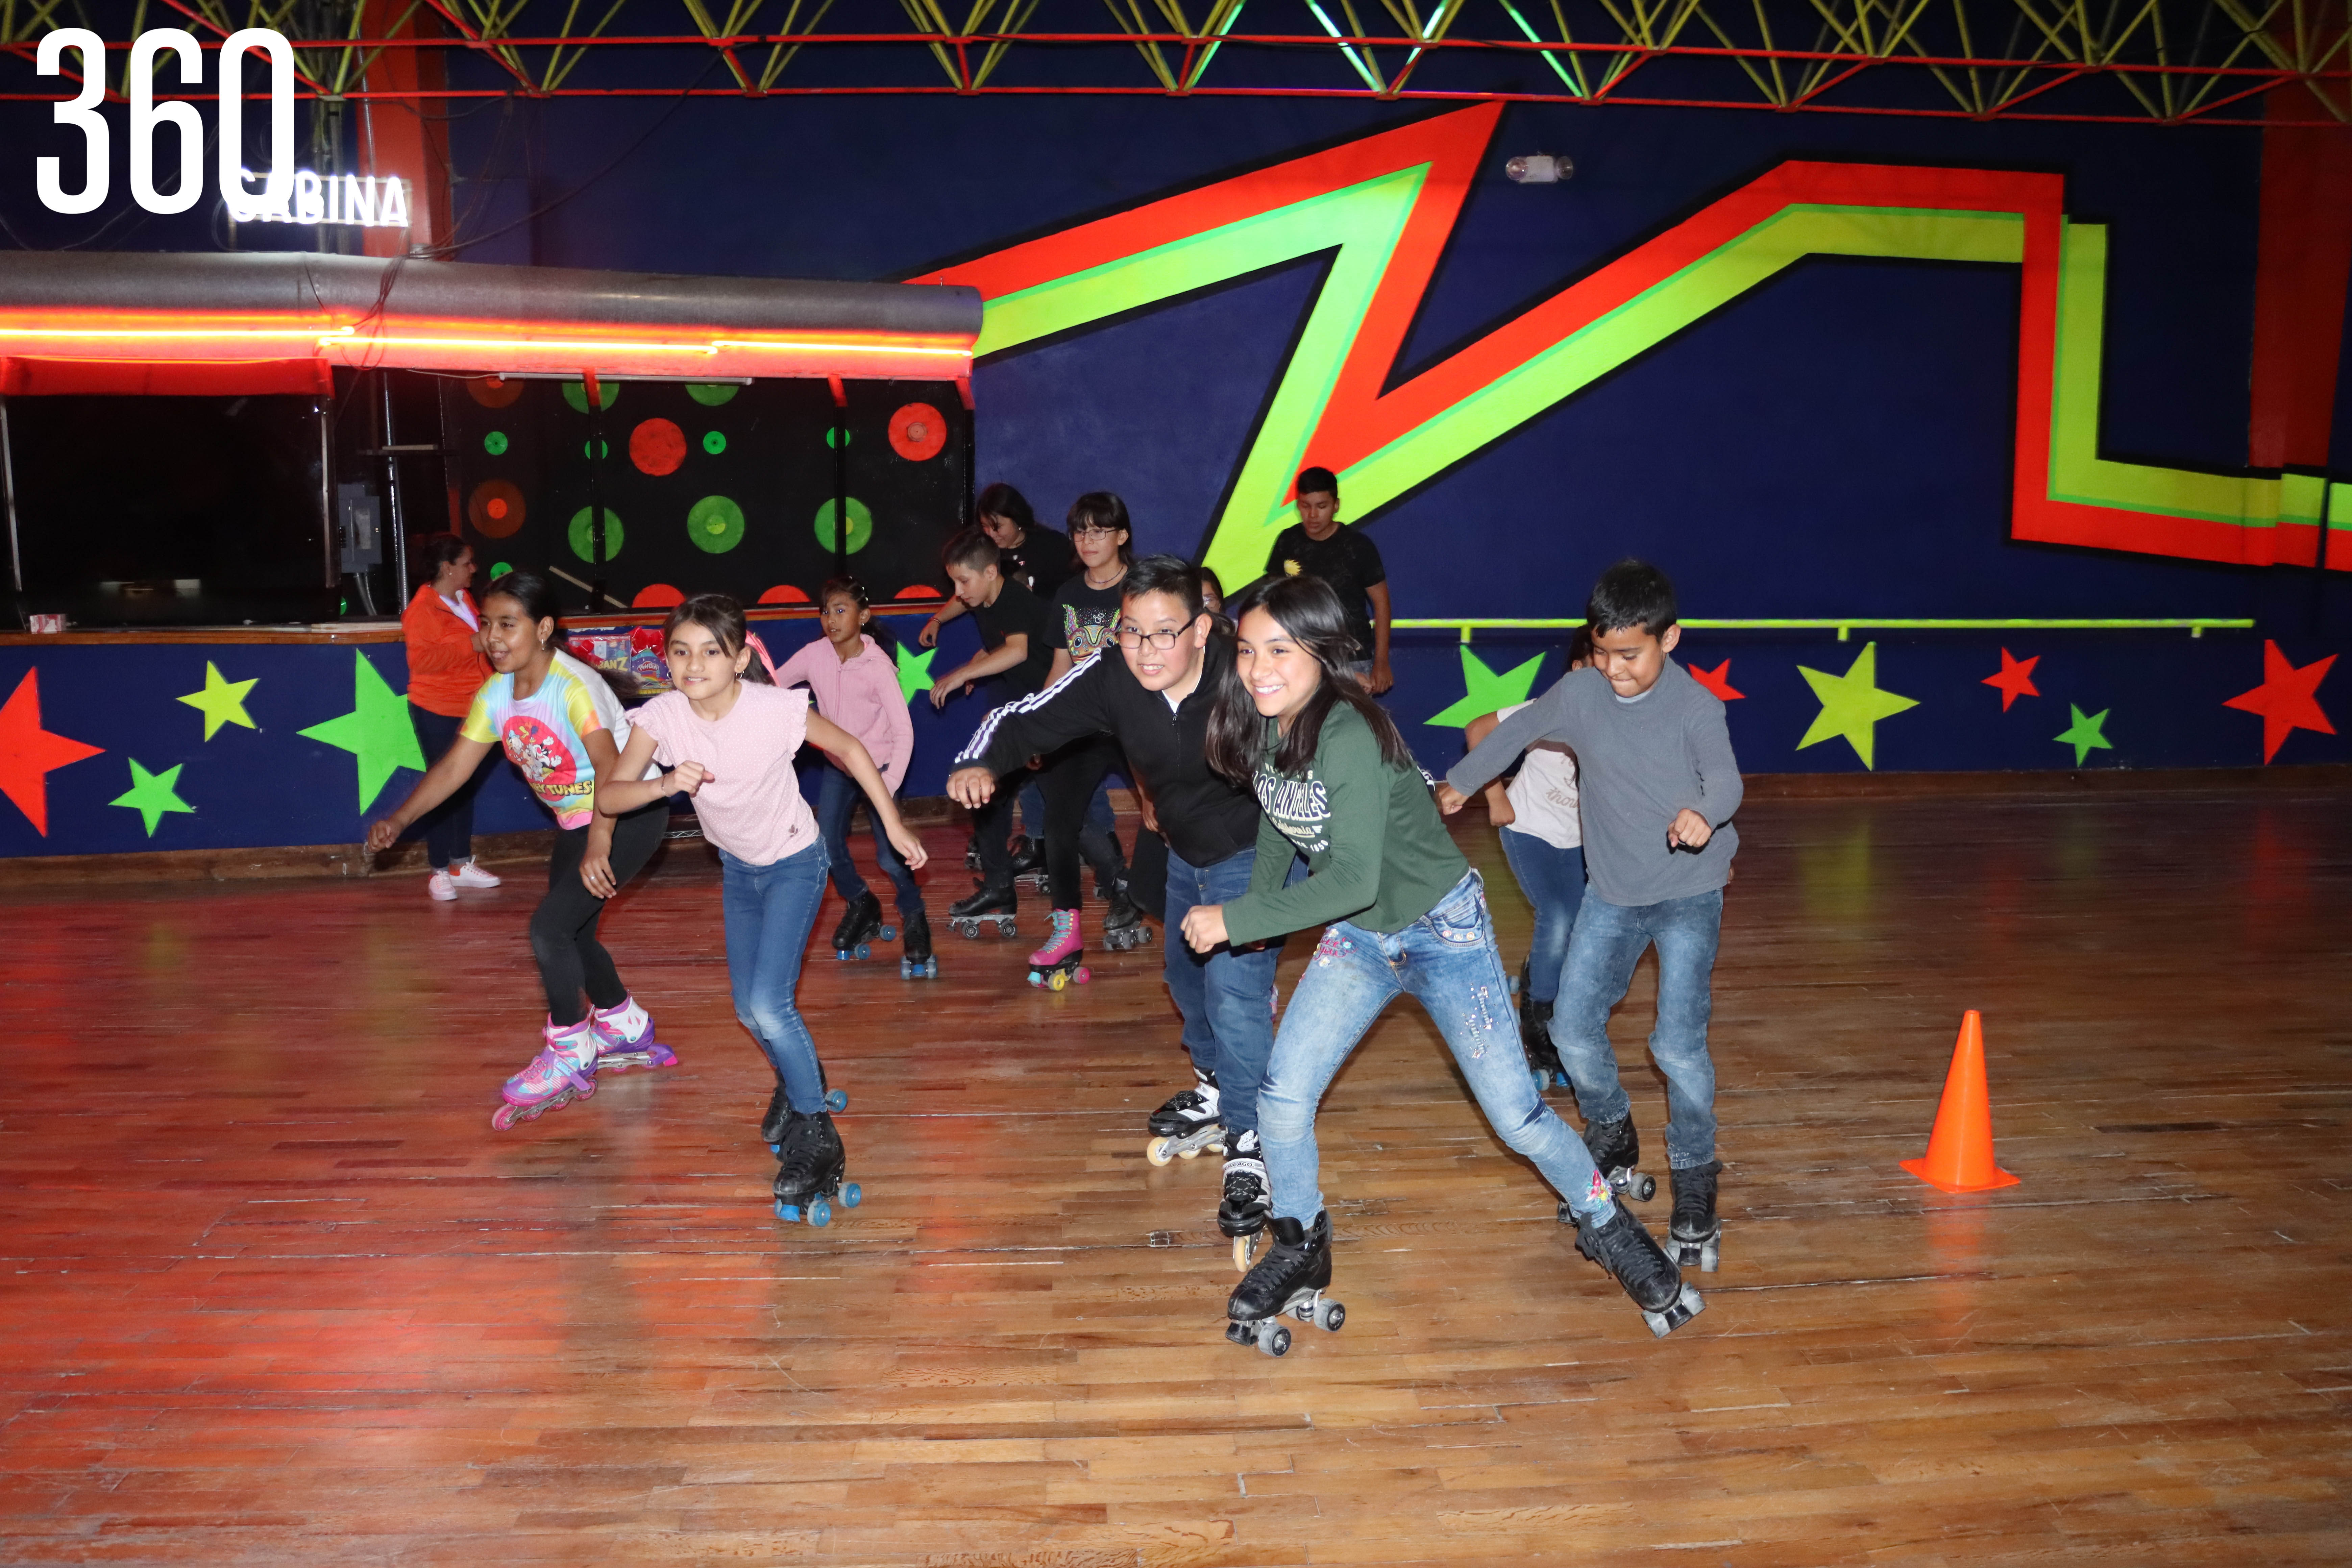 Los niños se divirtieron en la pista y participaron en un concurso de carreras en patines.